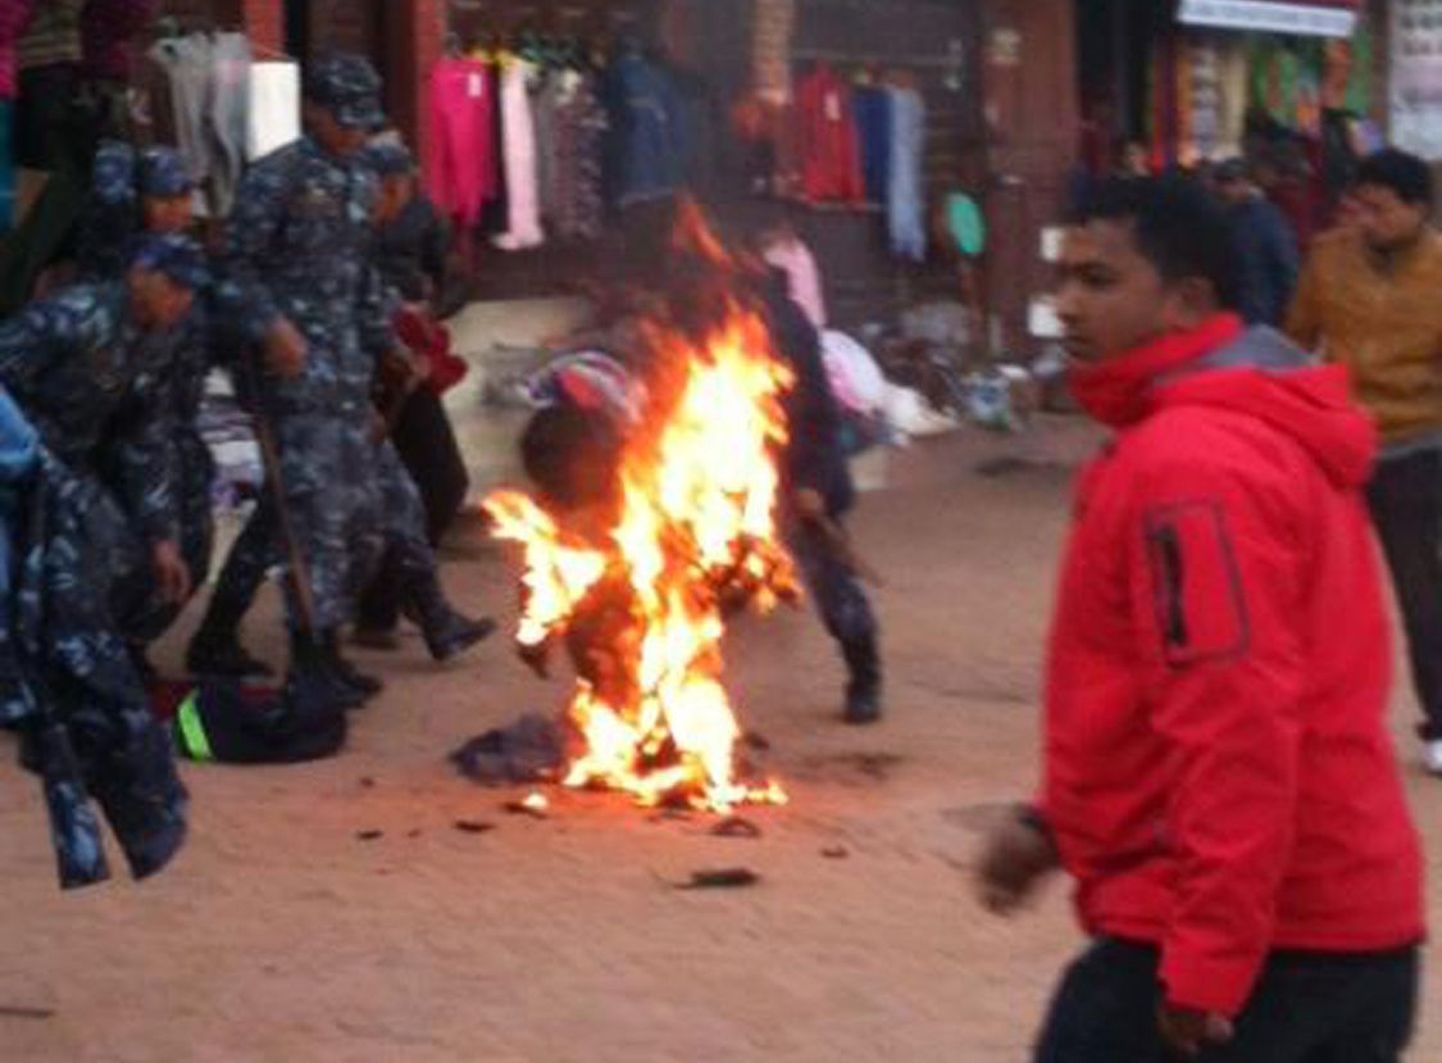 Eksiilis elanud tiibetlasest munk pani end Kathmandus põlema 13. veebruaril.